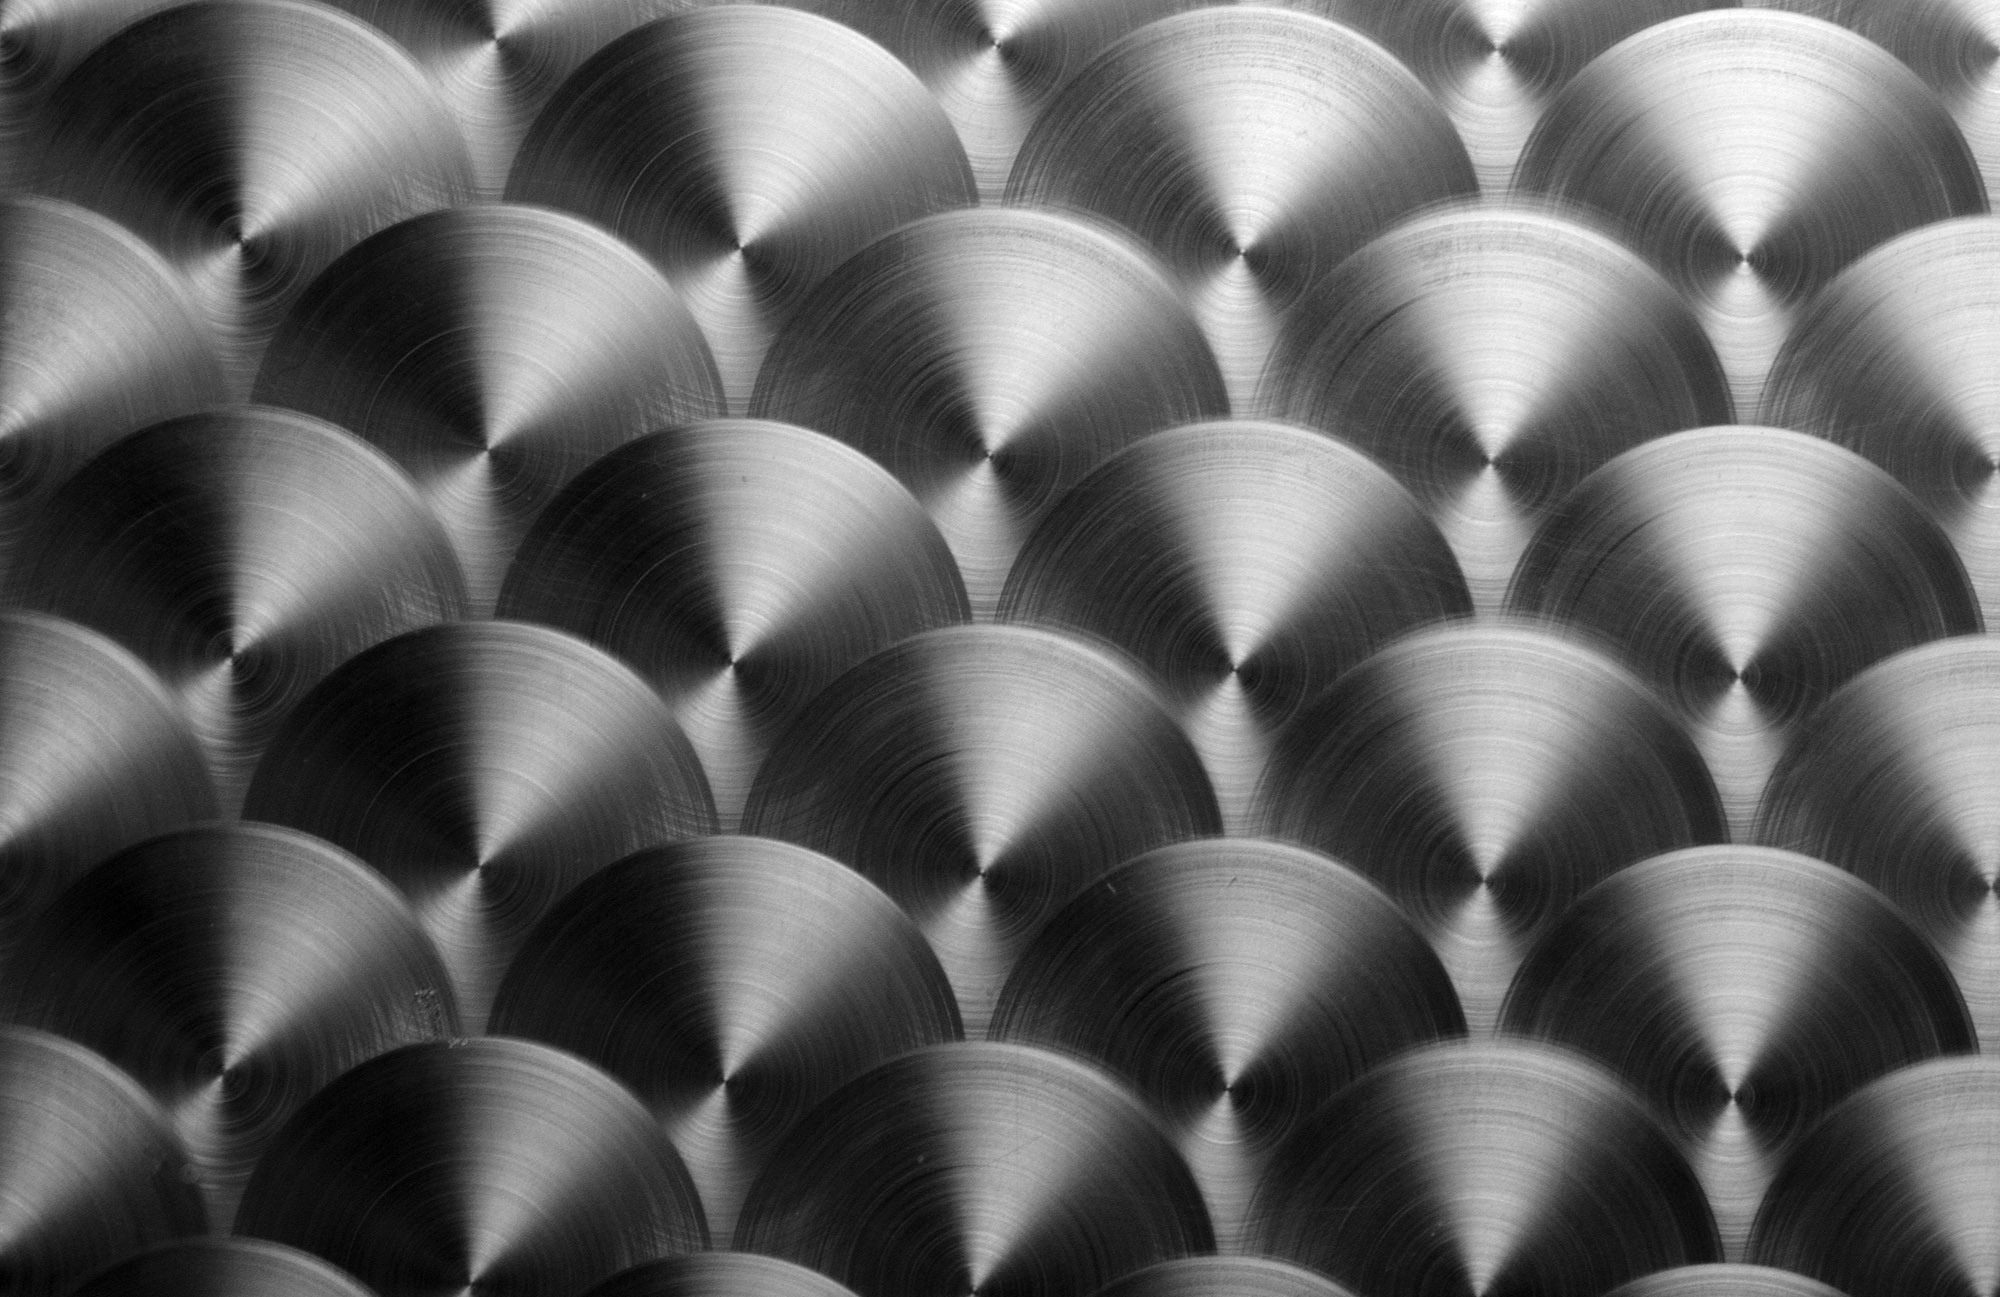 Steel discs